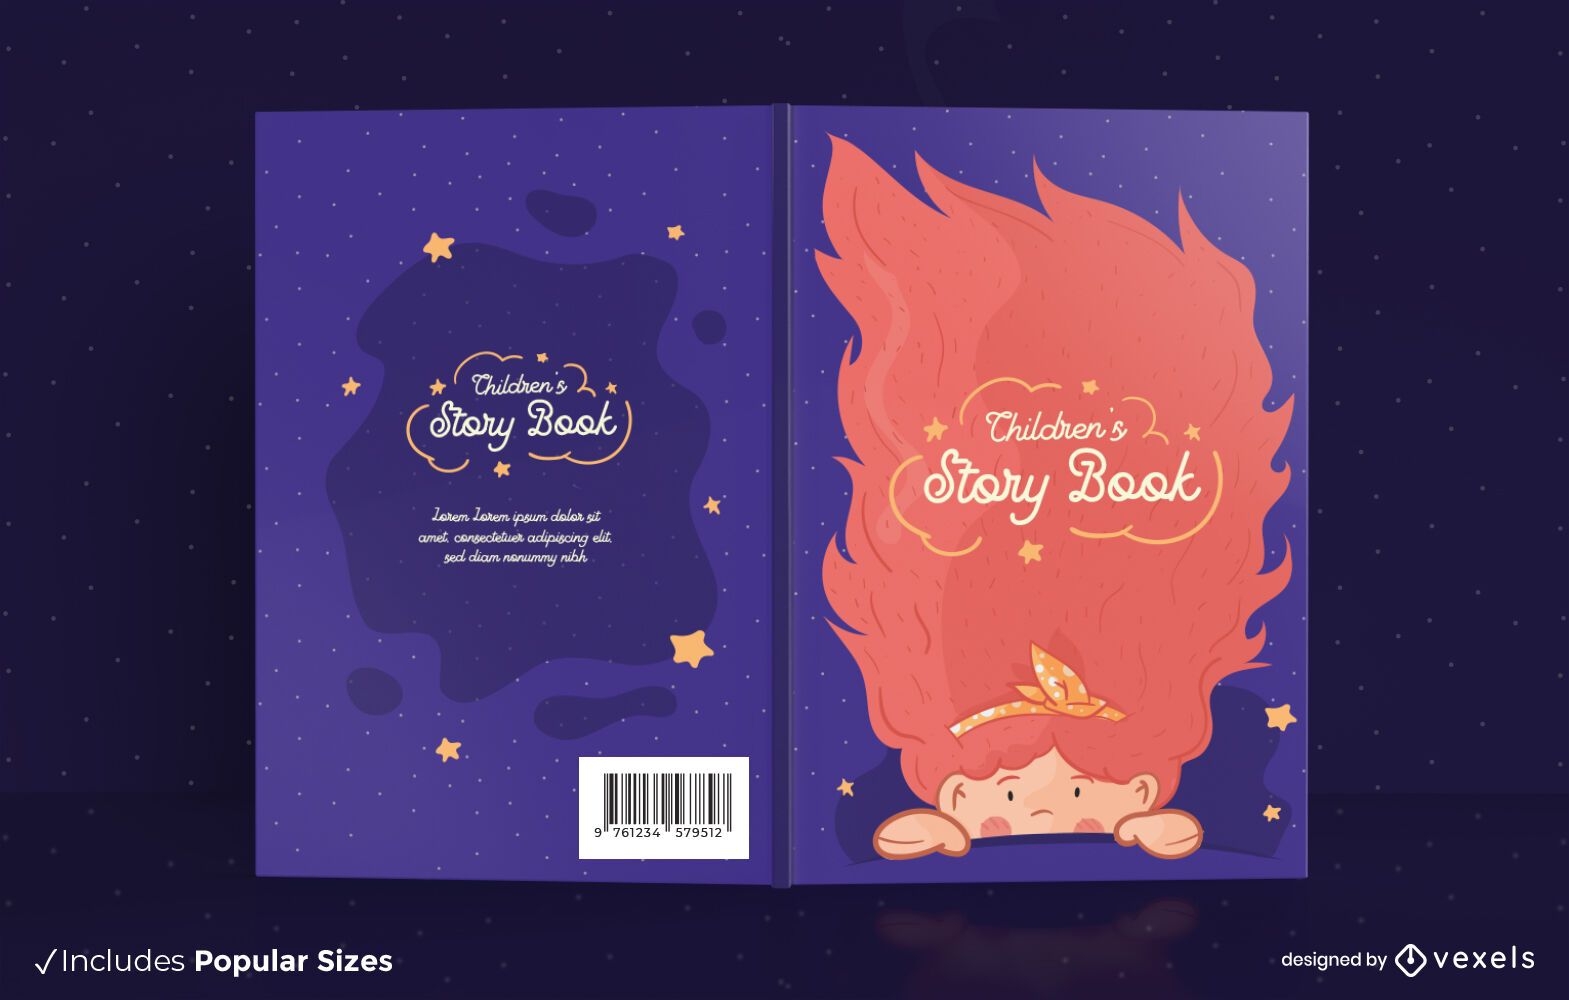 Diseño de portada de libro de cuentos para niños.